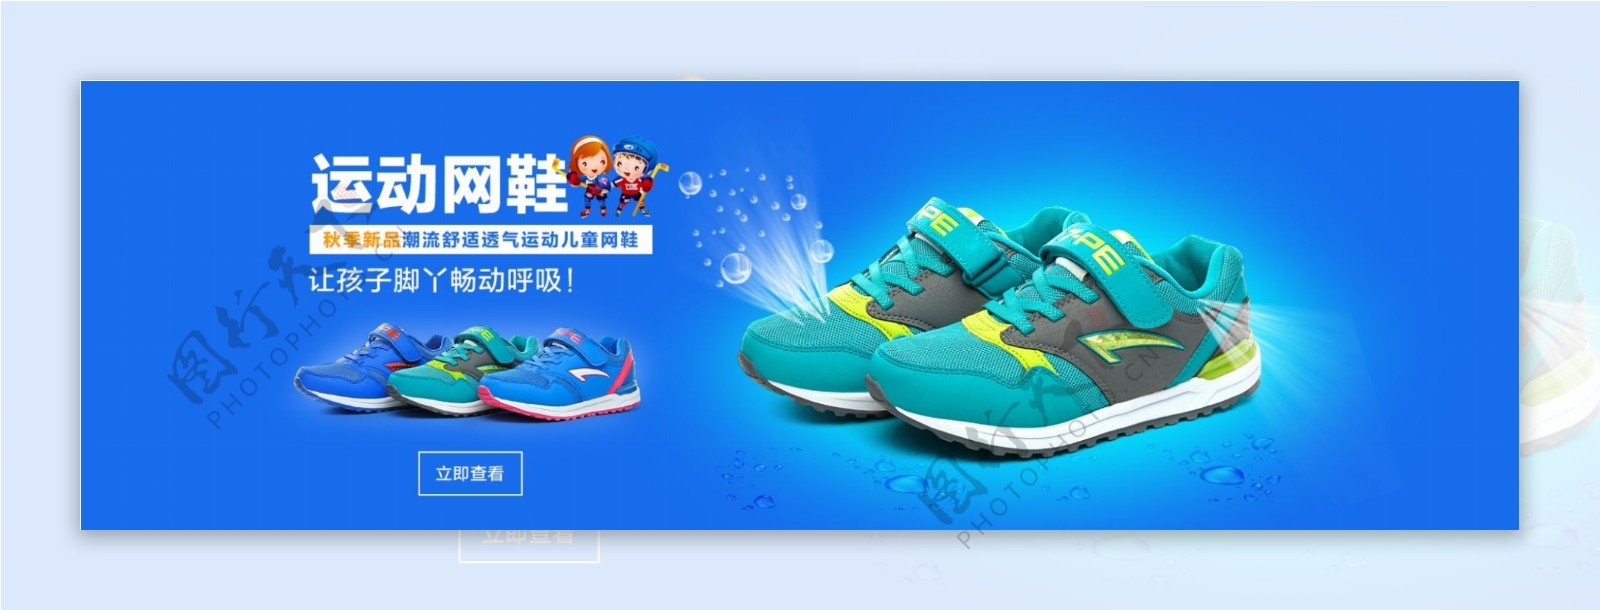 淘宝天猫童鞋夏季运动鞋透气海报设计